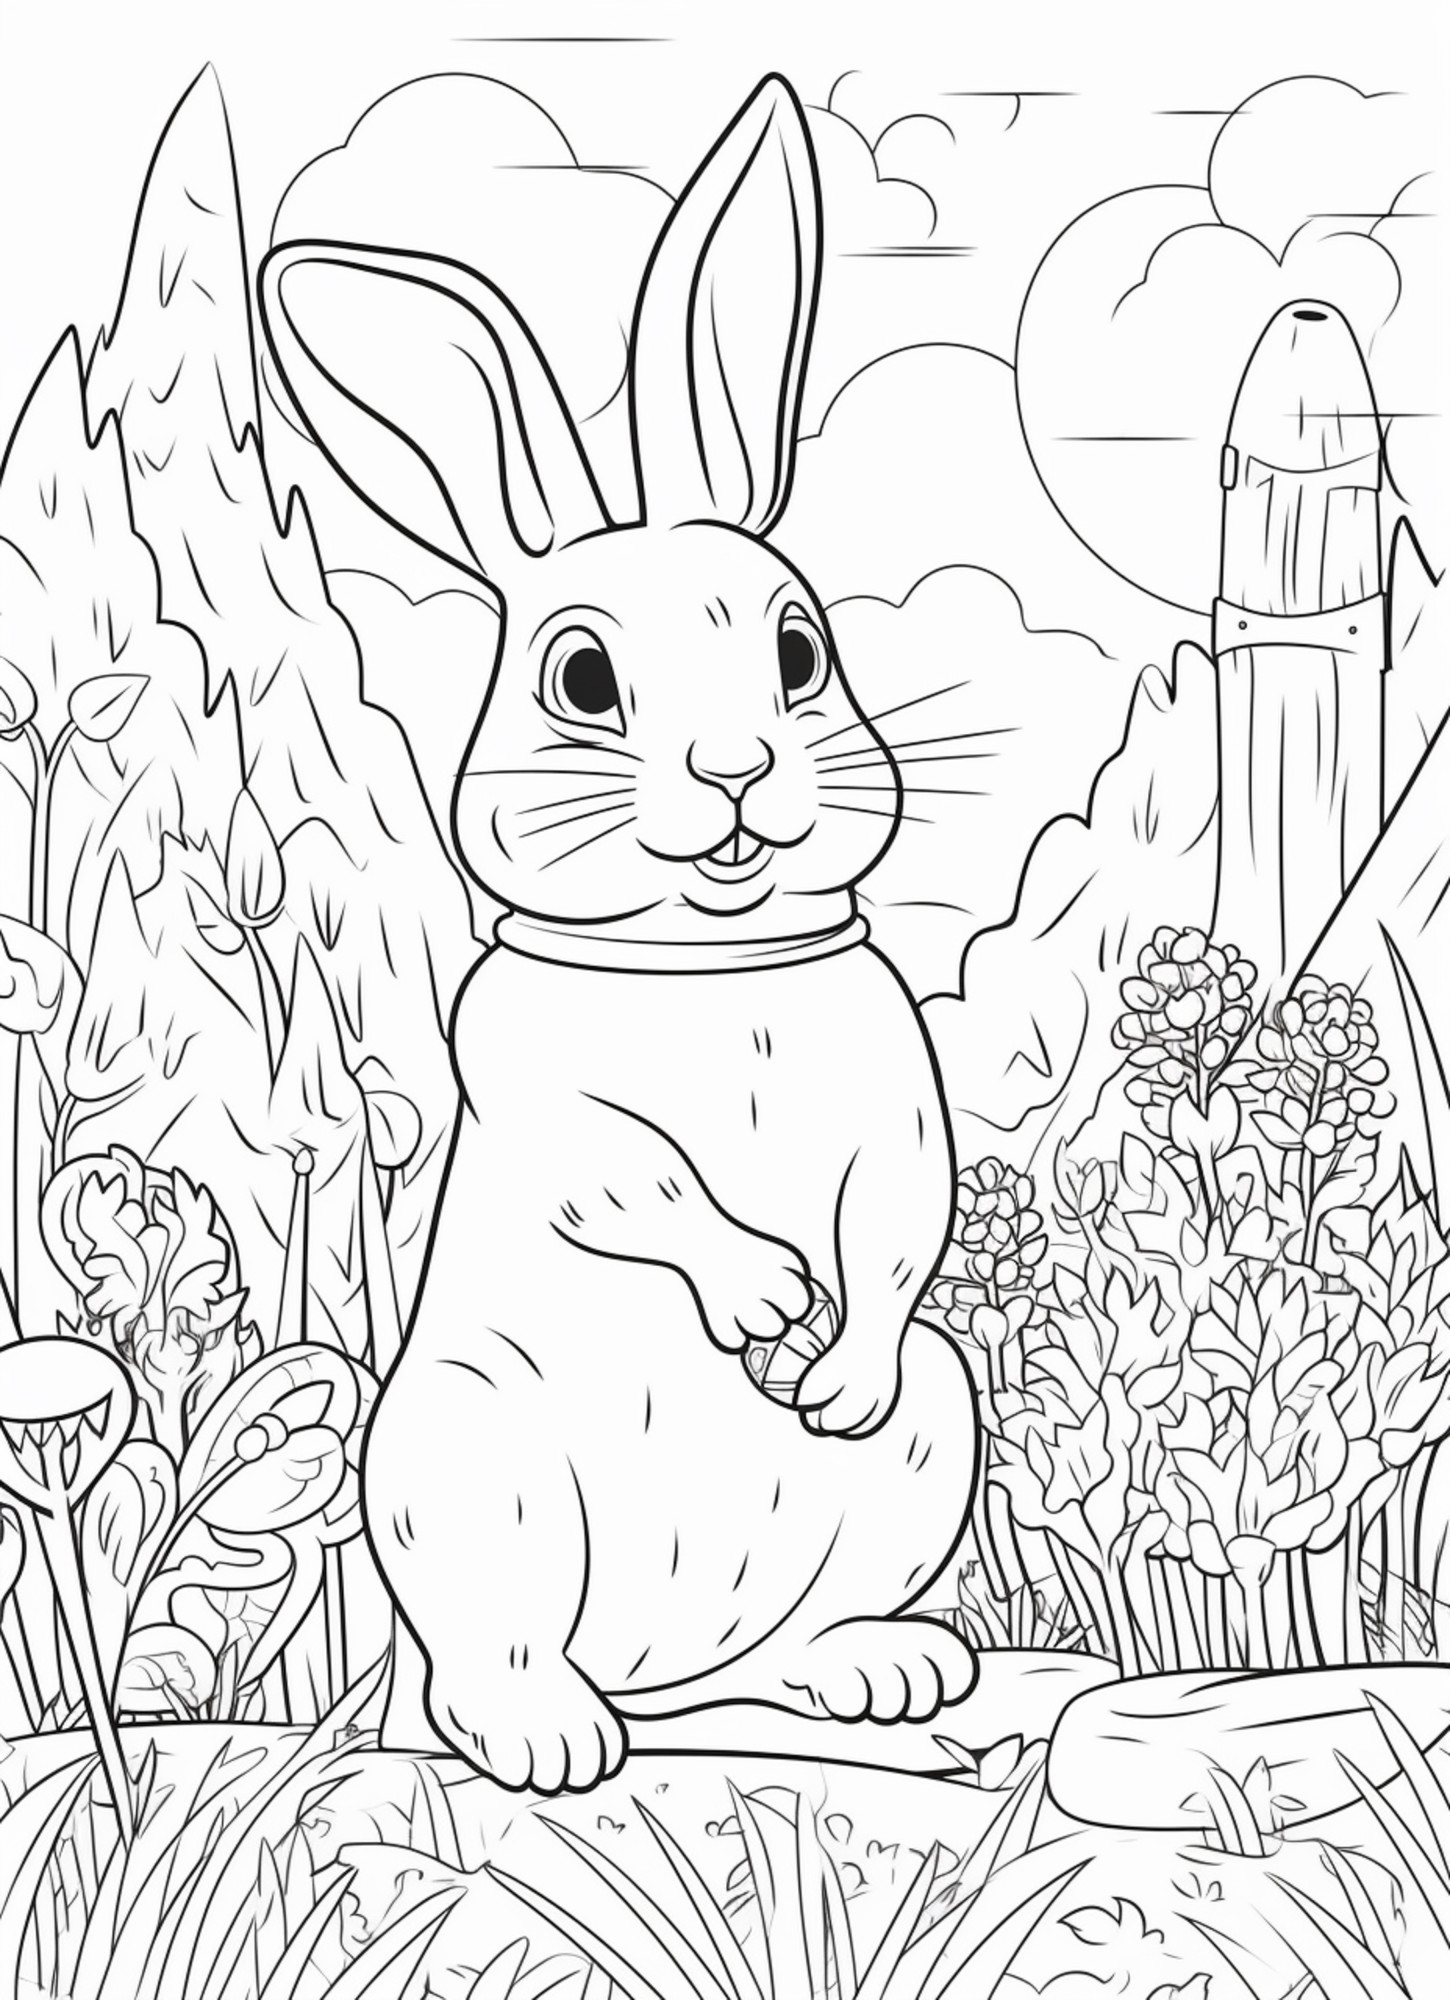 Раскраска для детей: заяц в сказочном лесу